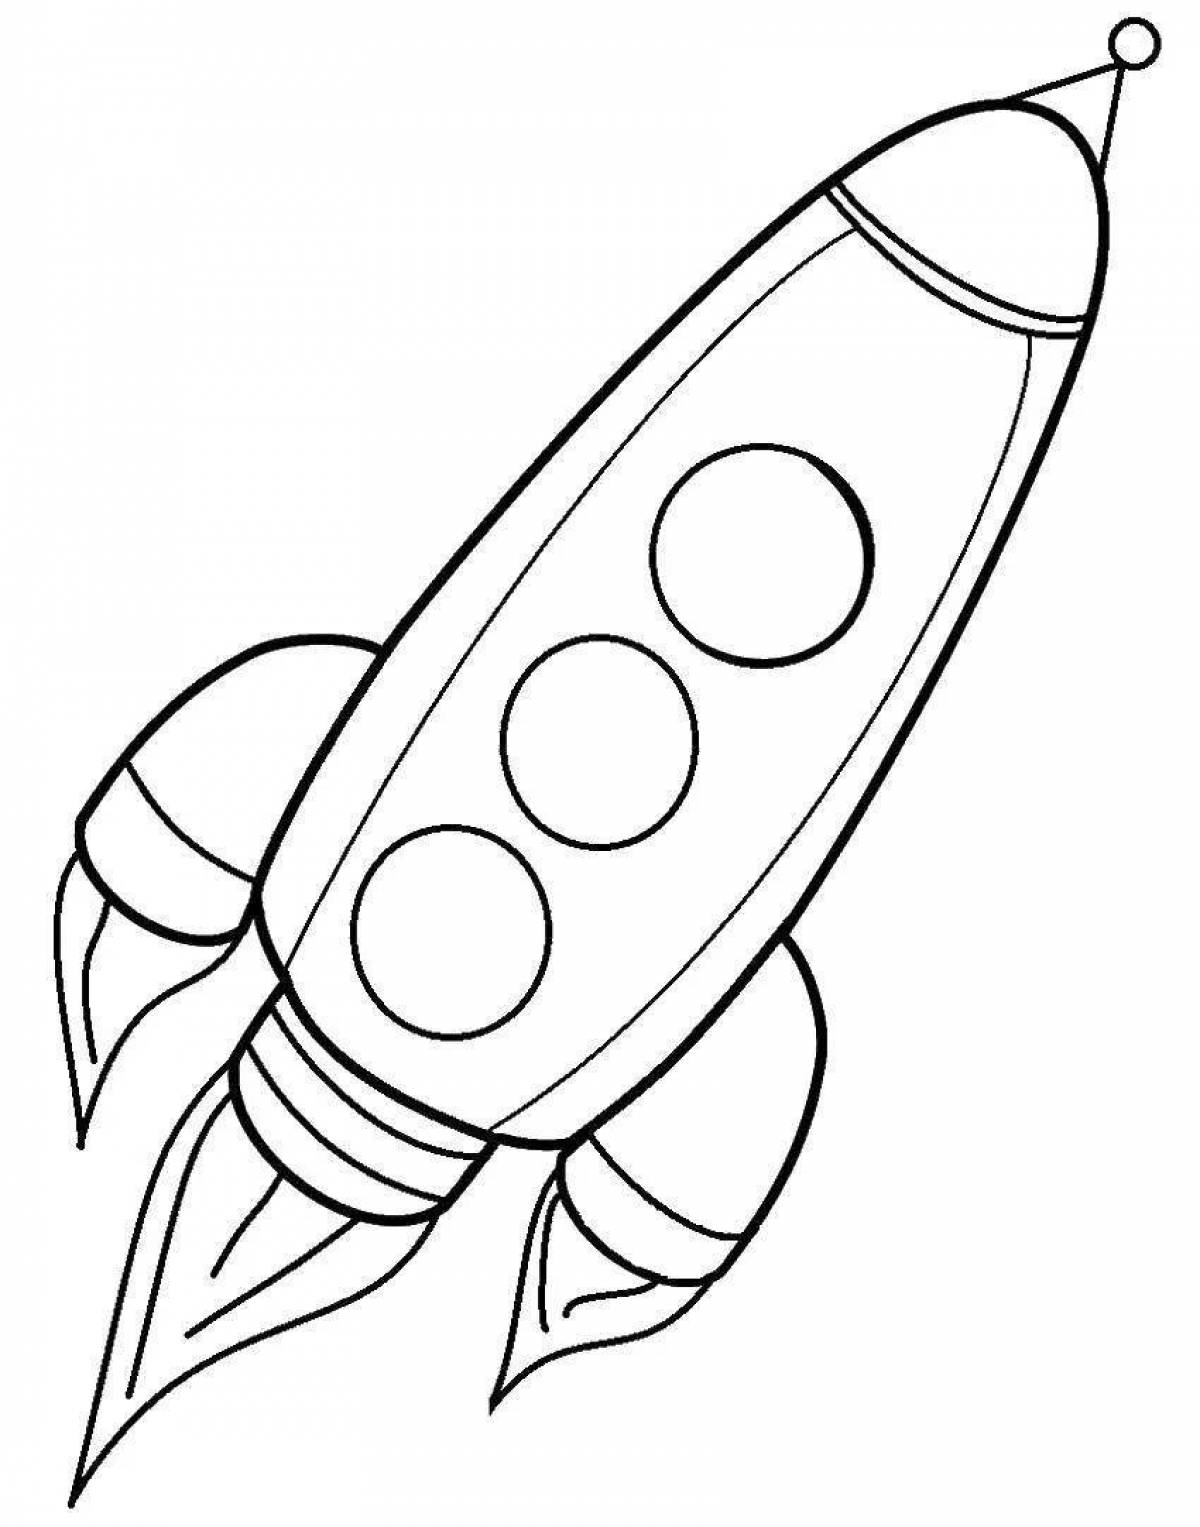 Fun rocket drawing